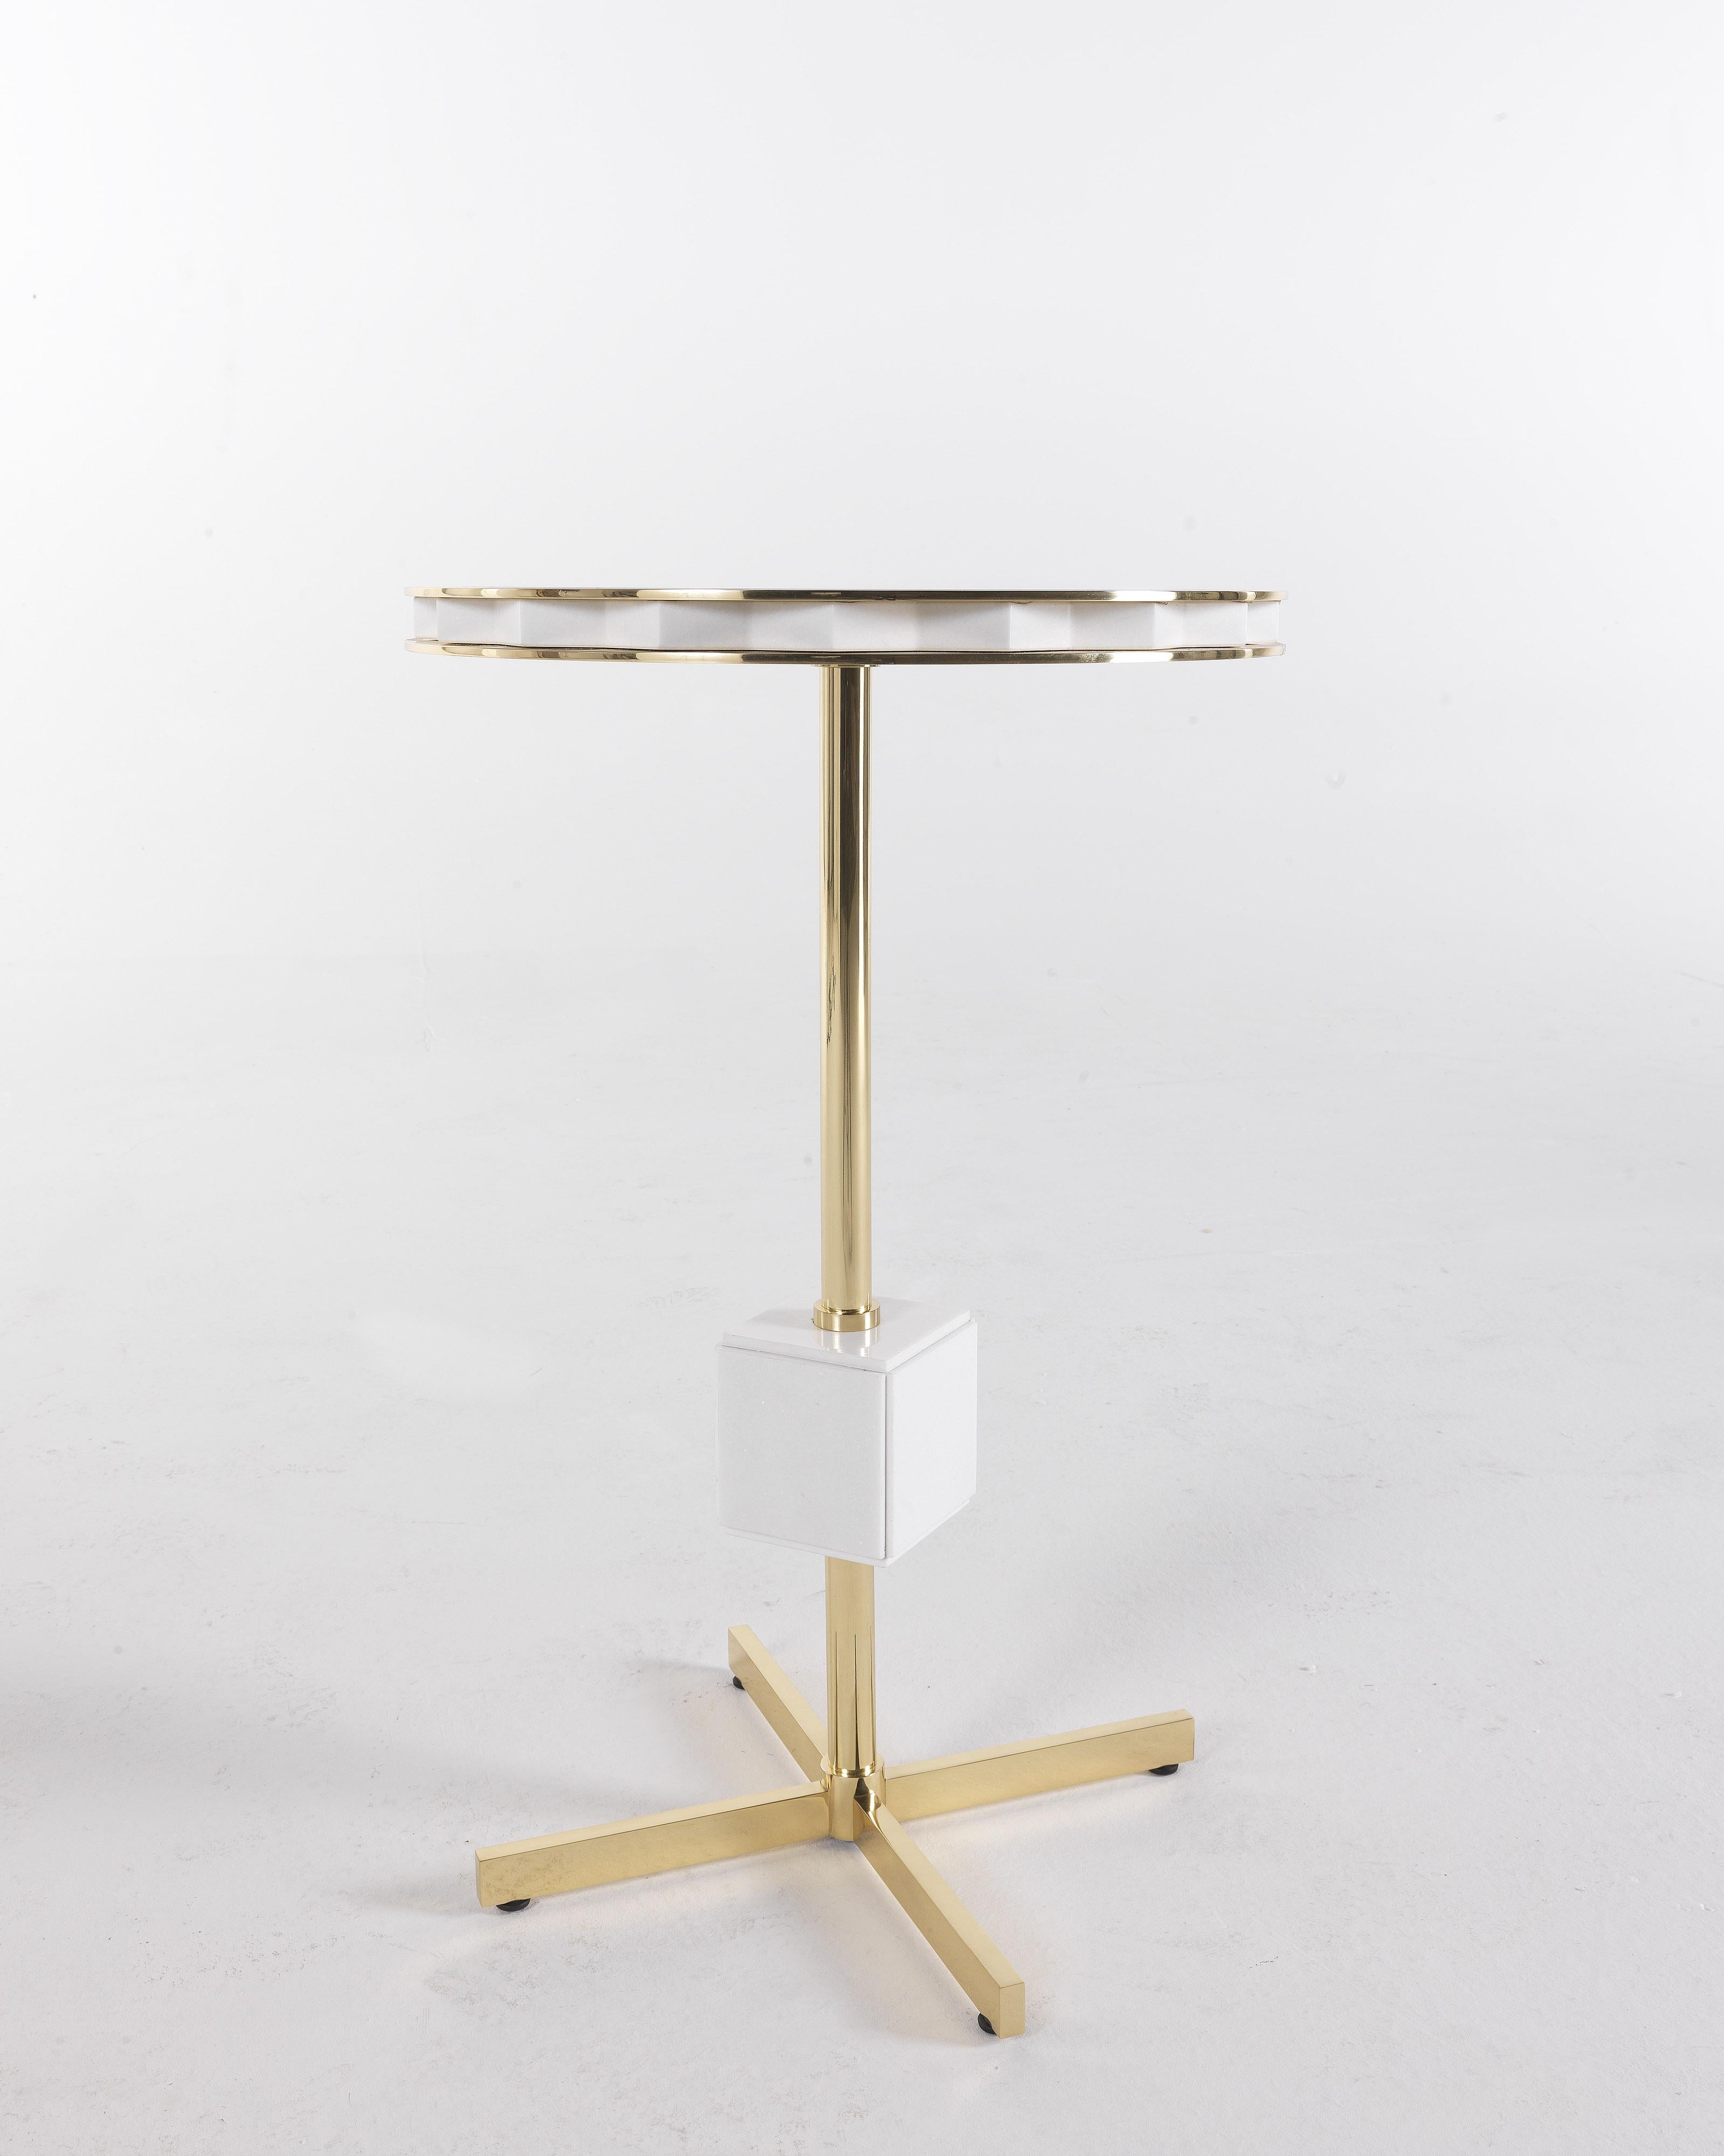 Formes géométriques dans le style Decò pour la table basse Emily, caractérisée par une structure en laiton avec une finition brillante, un cube décoratif et un plateau en marbre. Un meuble au charme éclectique, adapté aux environnements de style